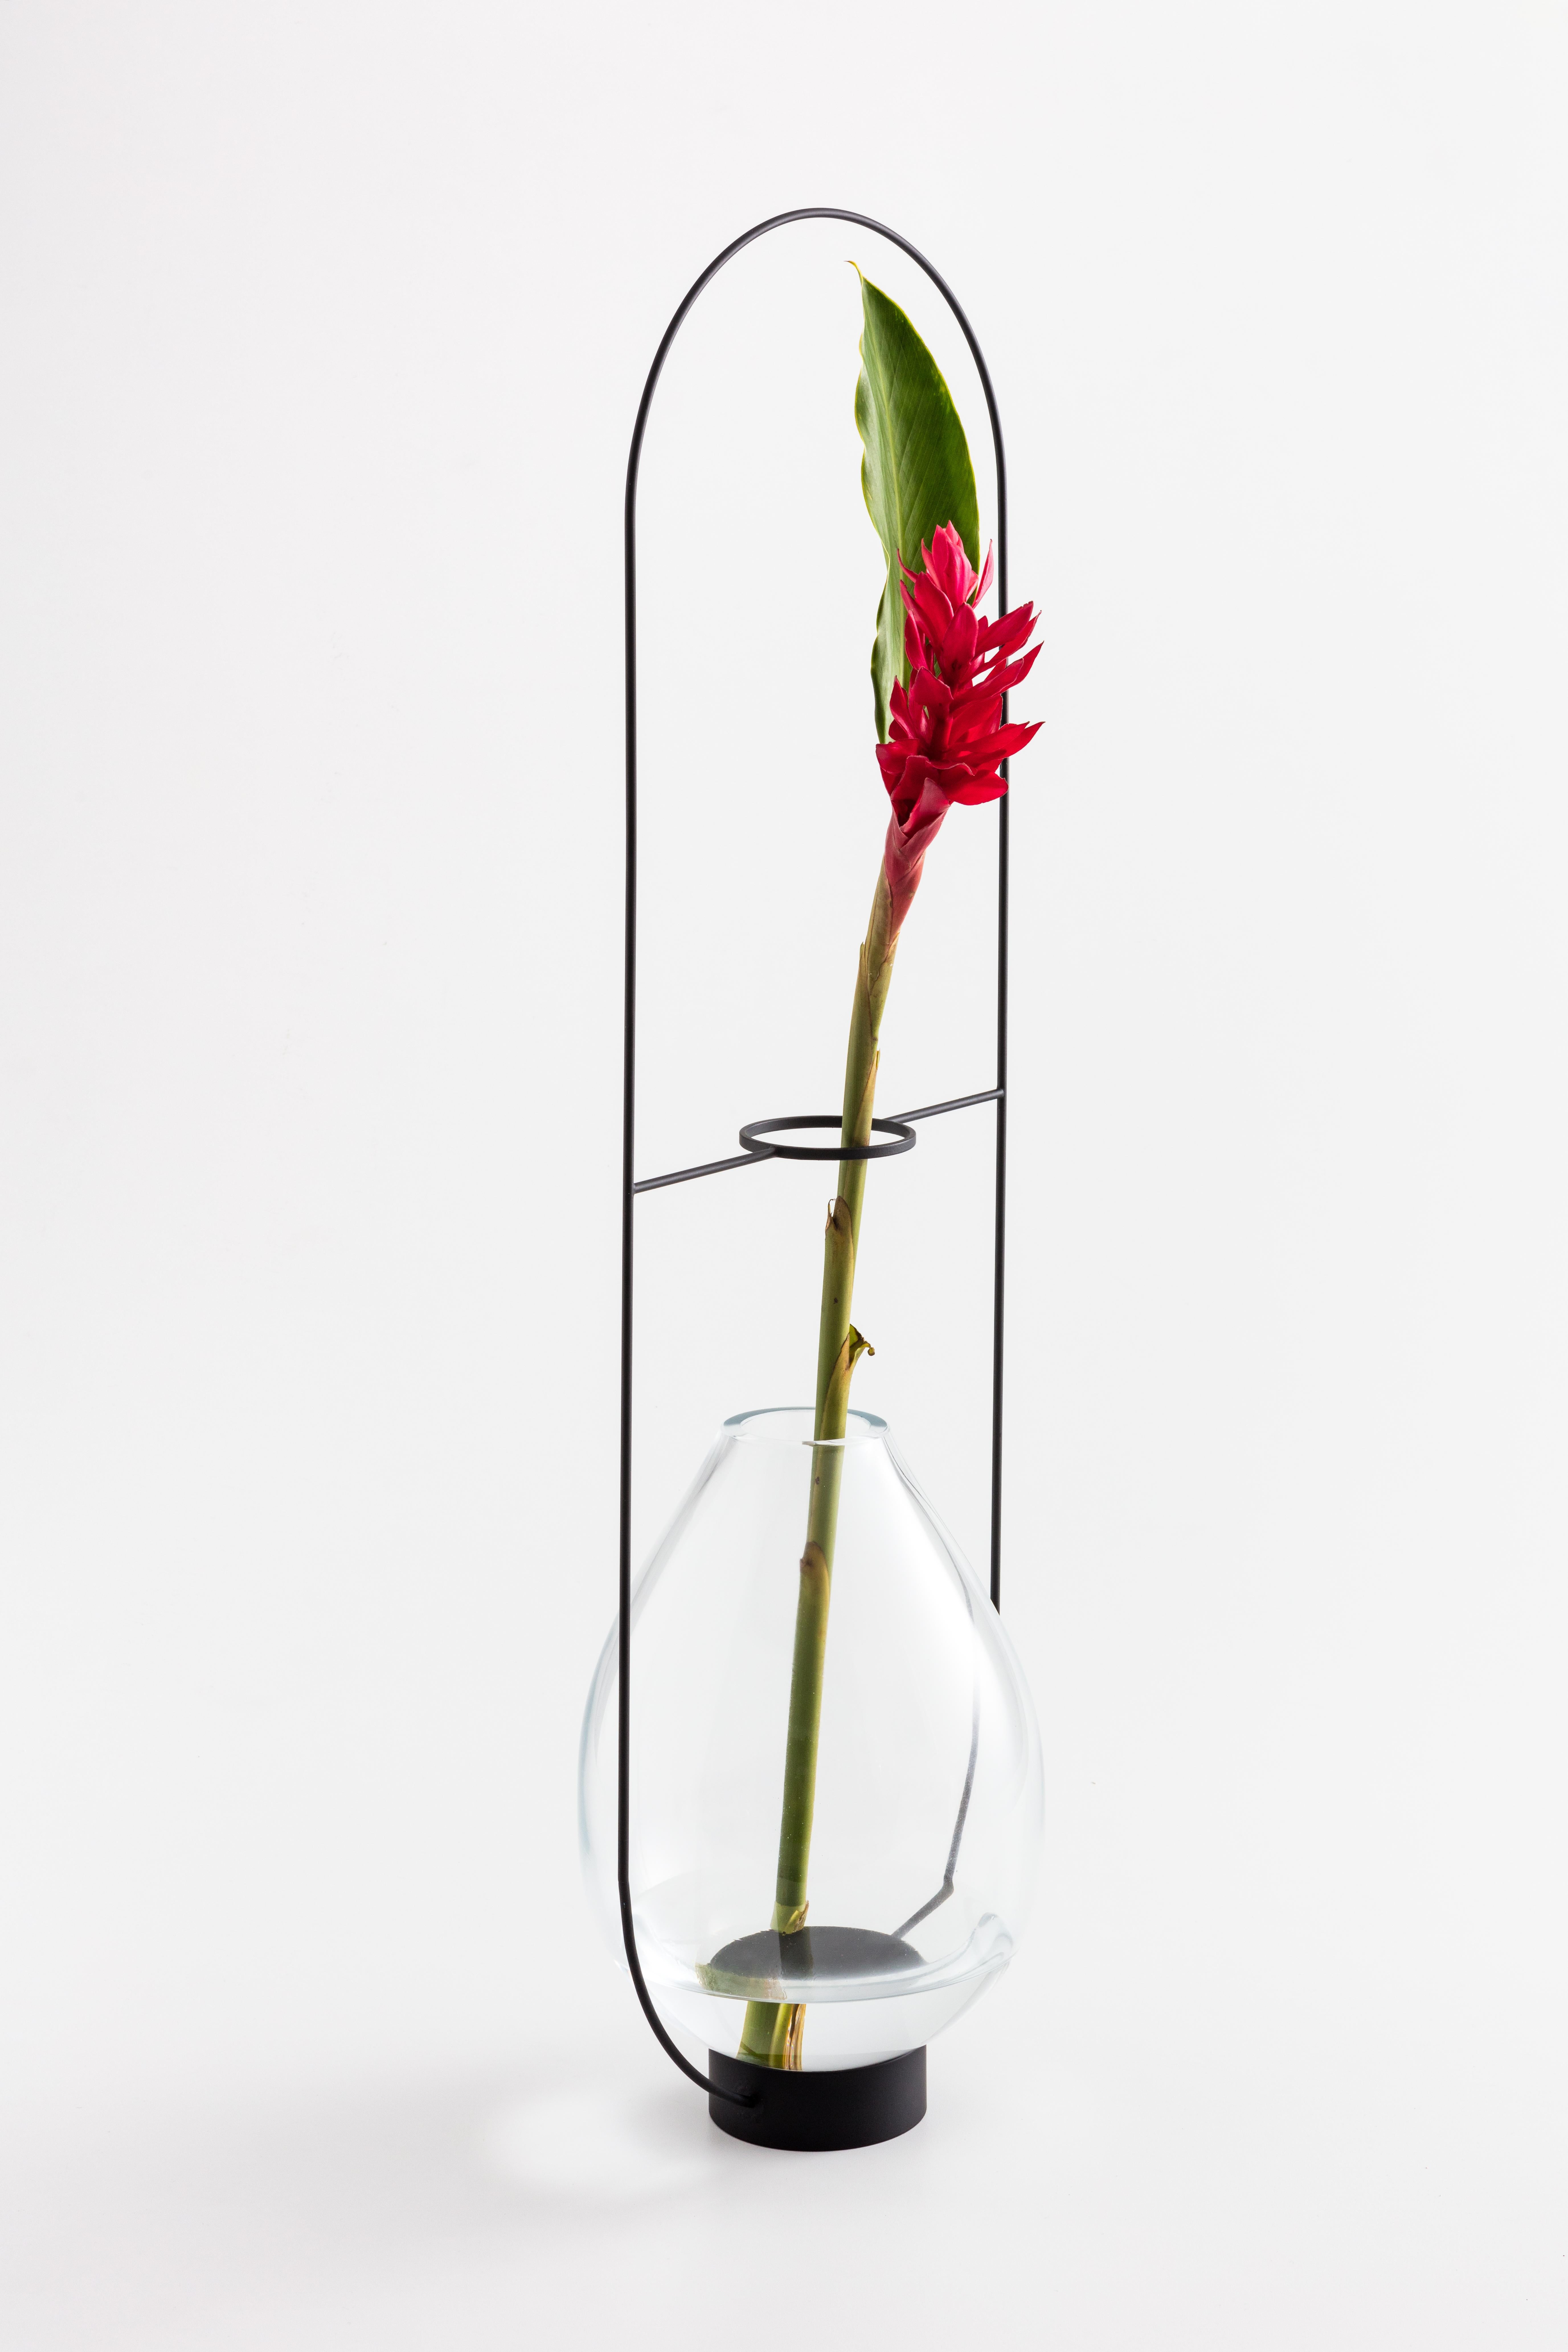 Le vase ELO G de Paulo Goldstein, design contemporain brésilien, verre soufflé et acier, fait partie d'une série de vases inspirés par l'observation des lignes naturelles des fleurs et des feuilles qu'ils contiennent. Les lignes des vases ont été